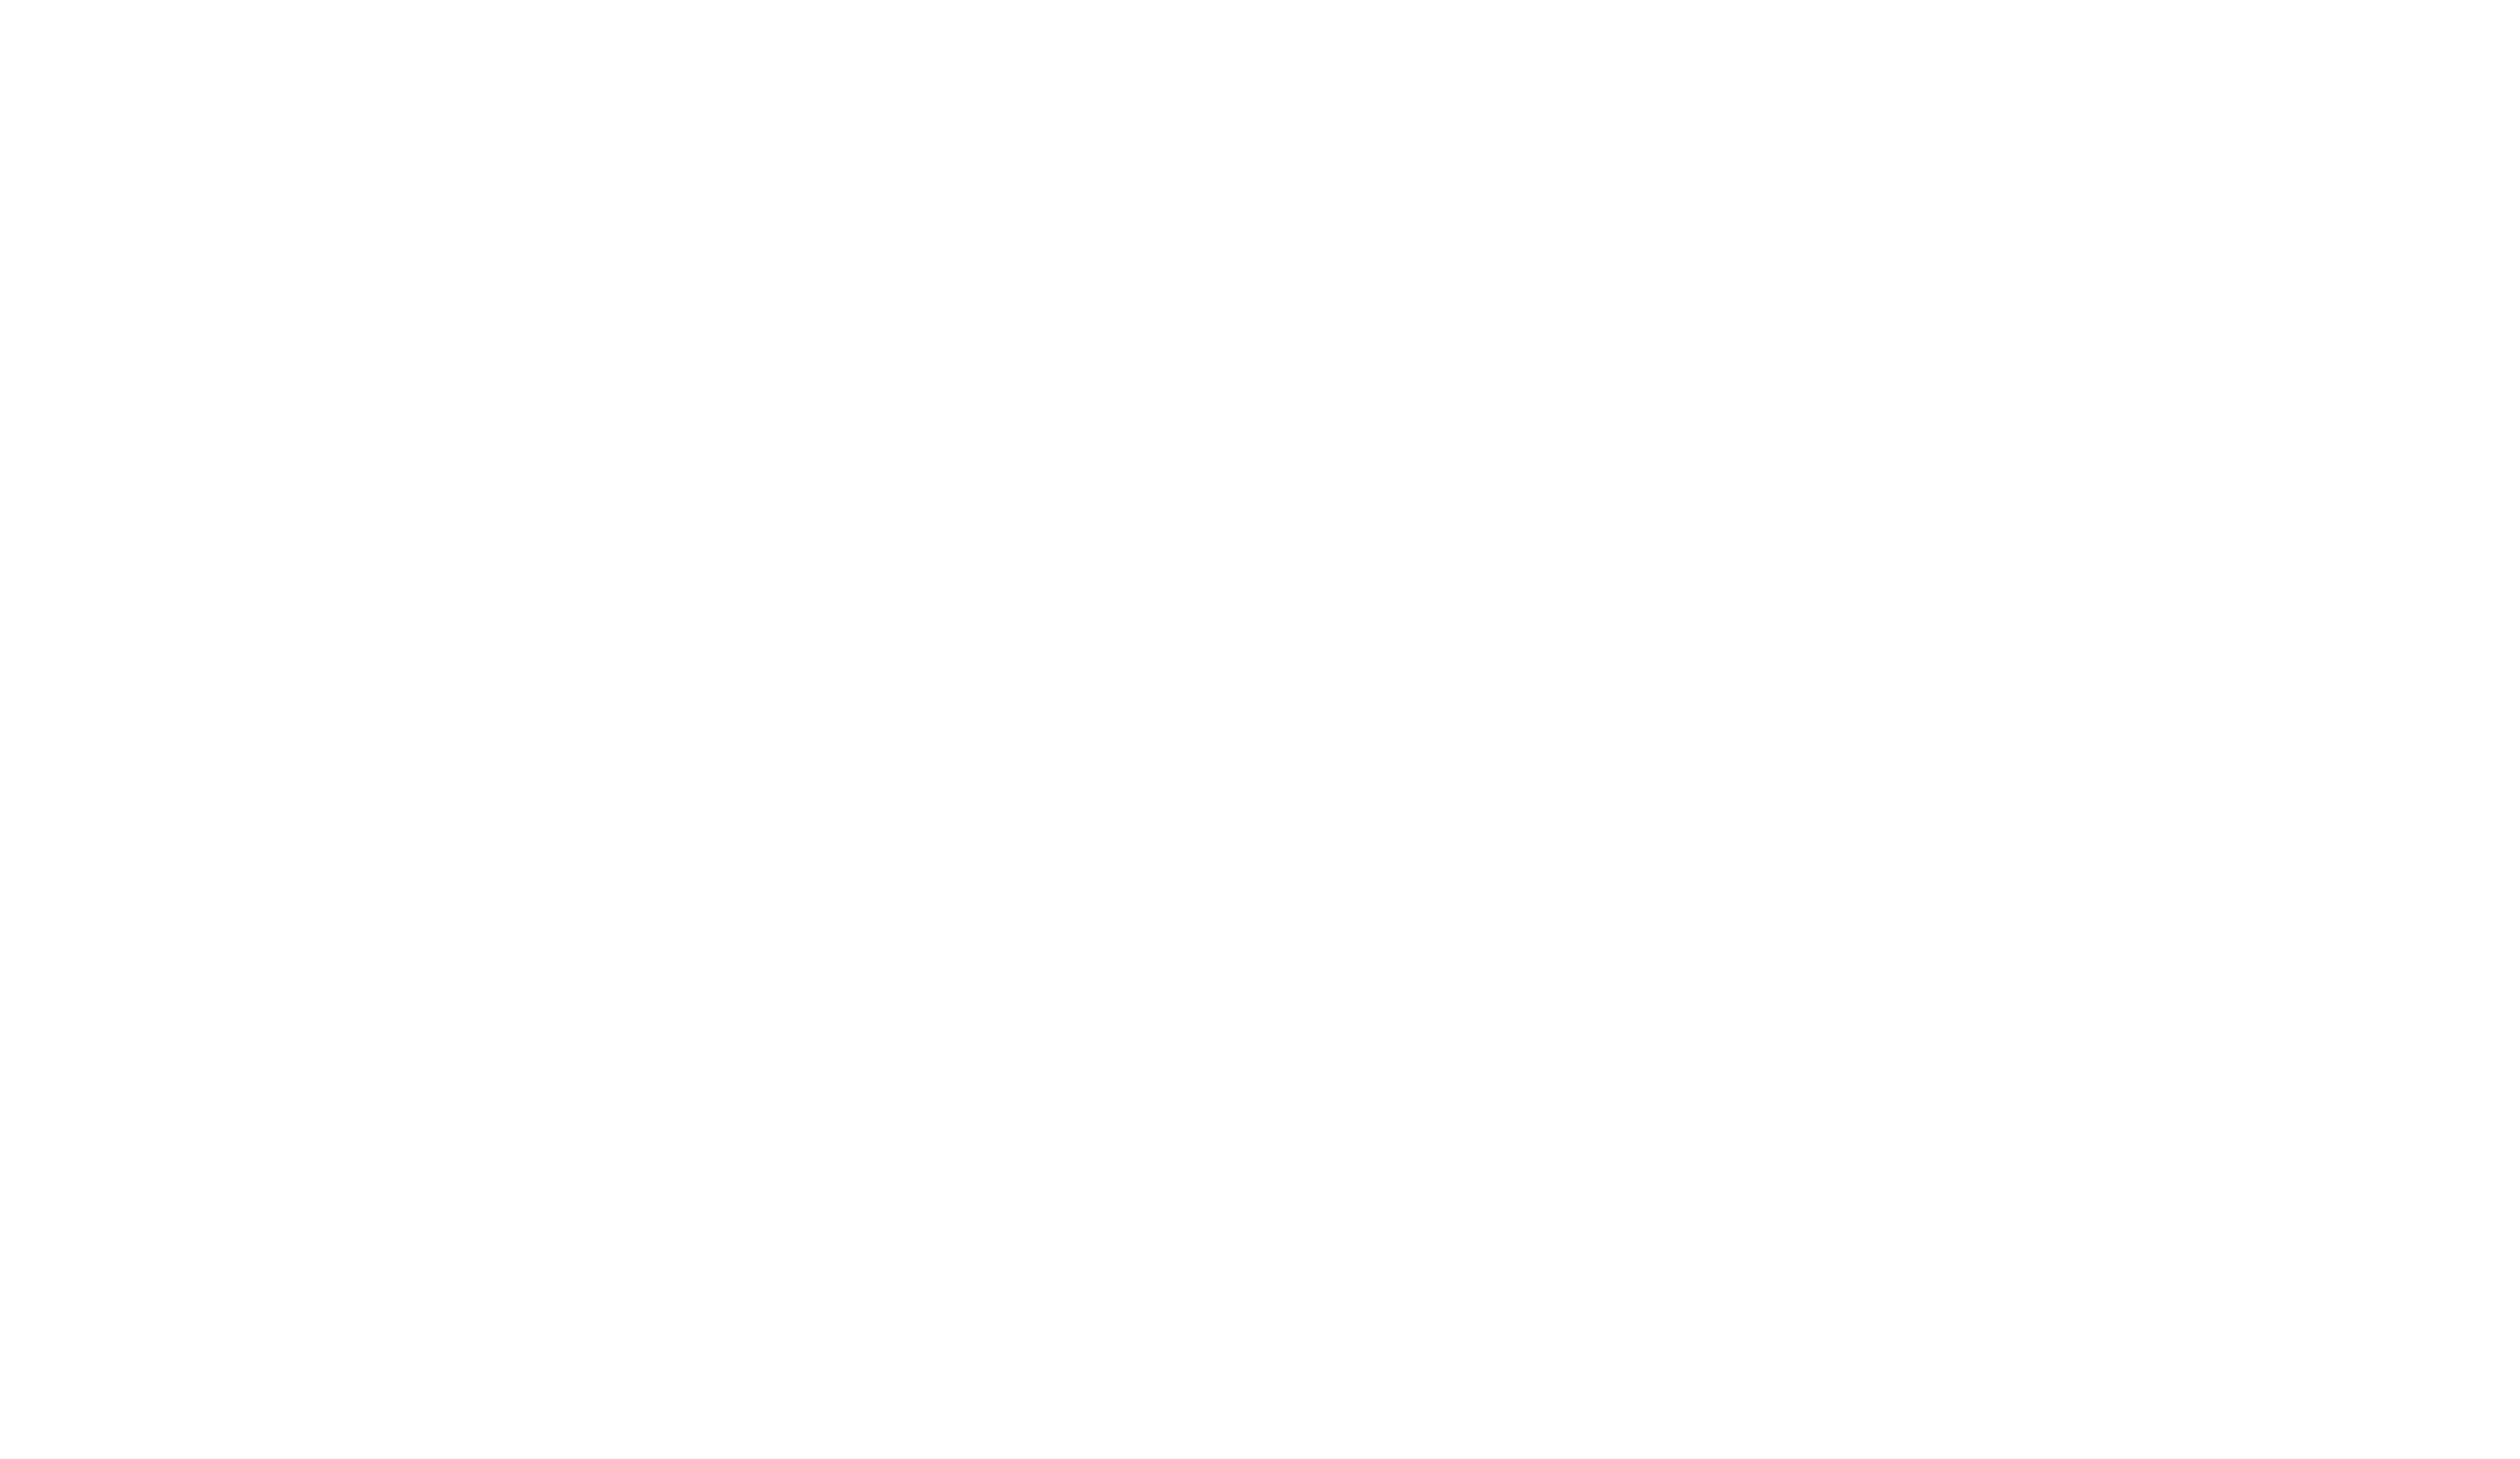 Cafe de lavenue